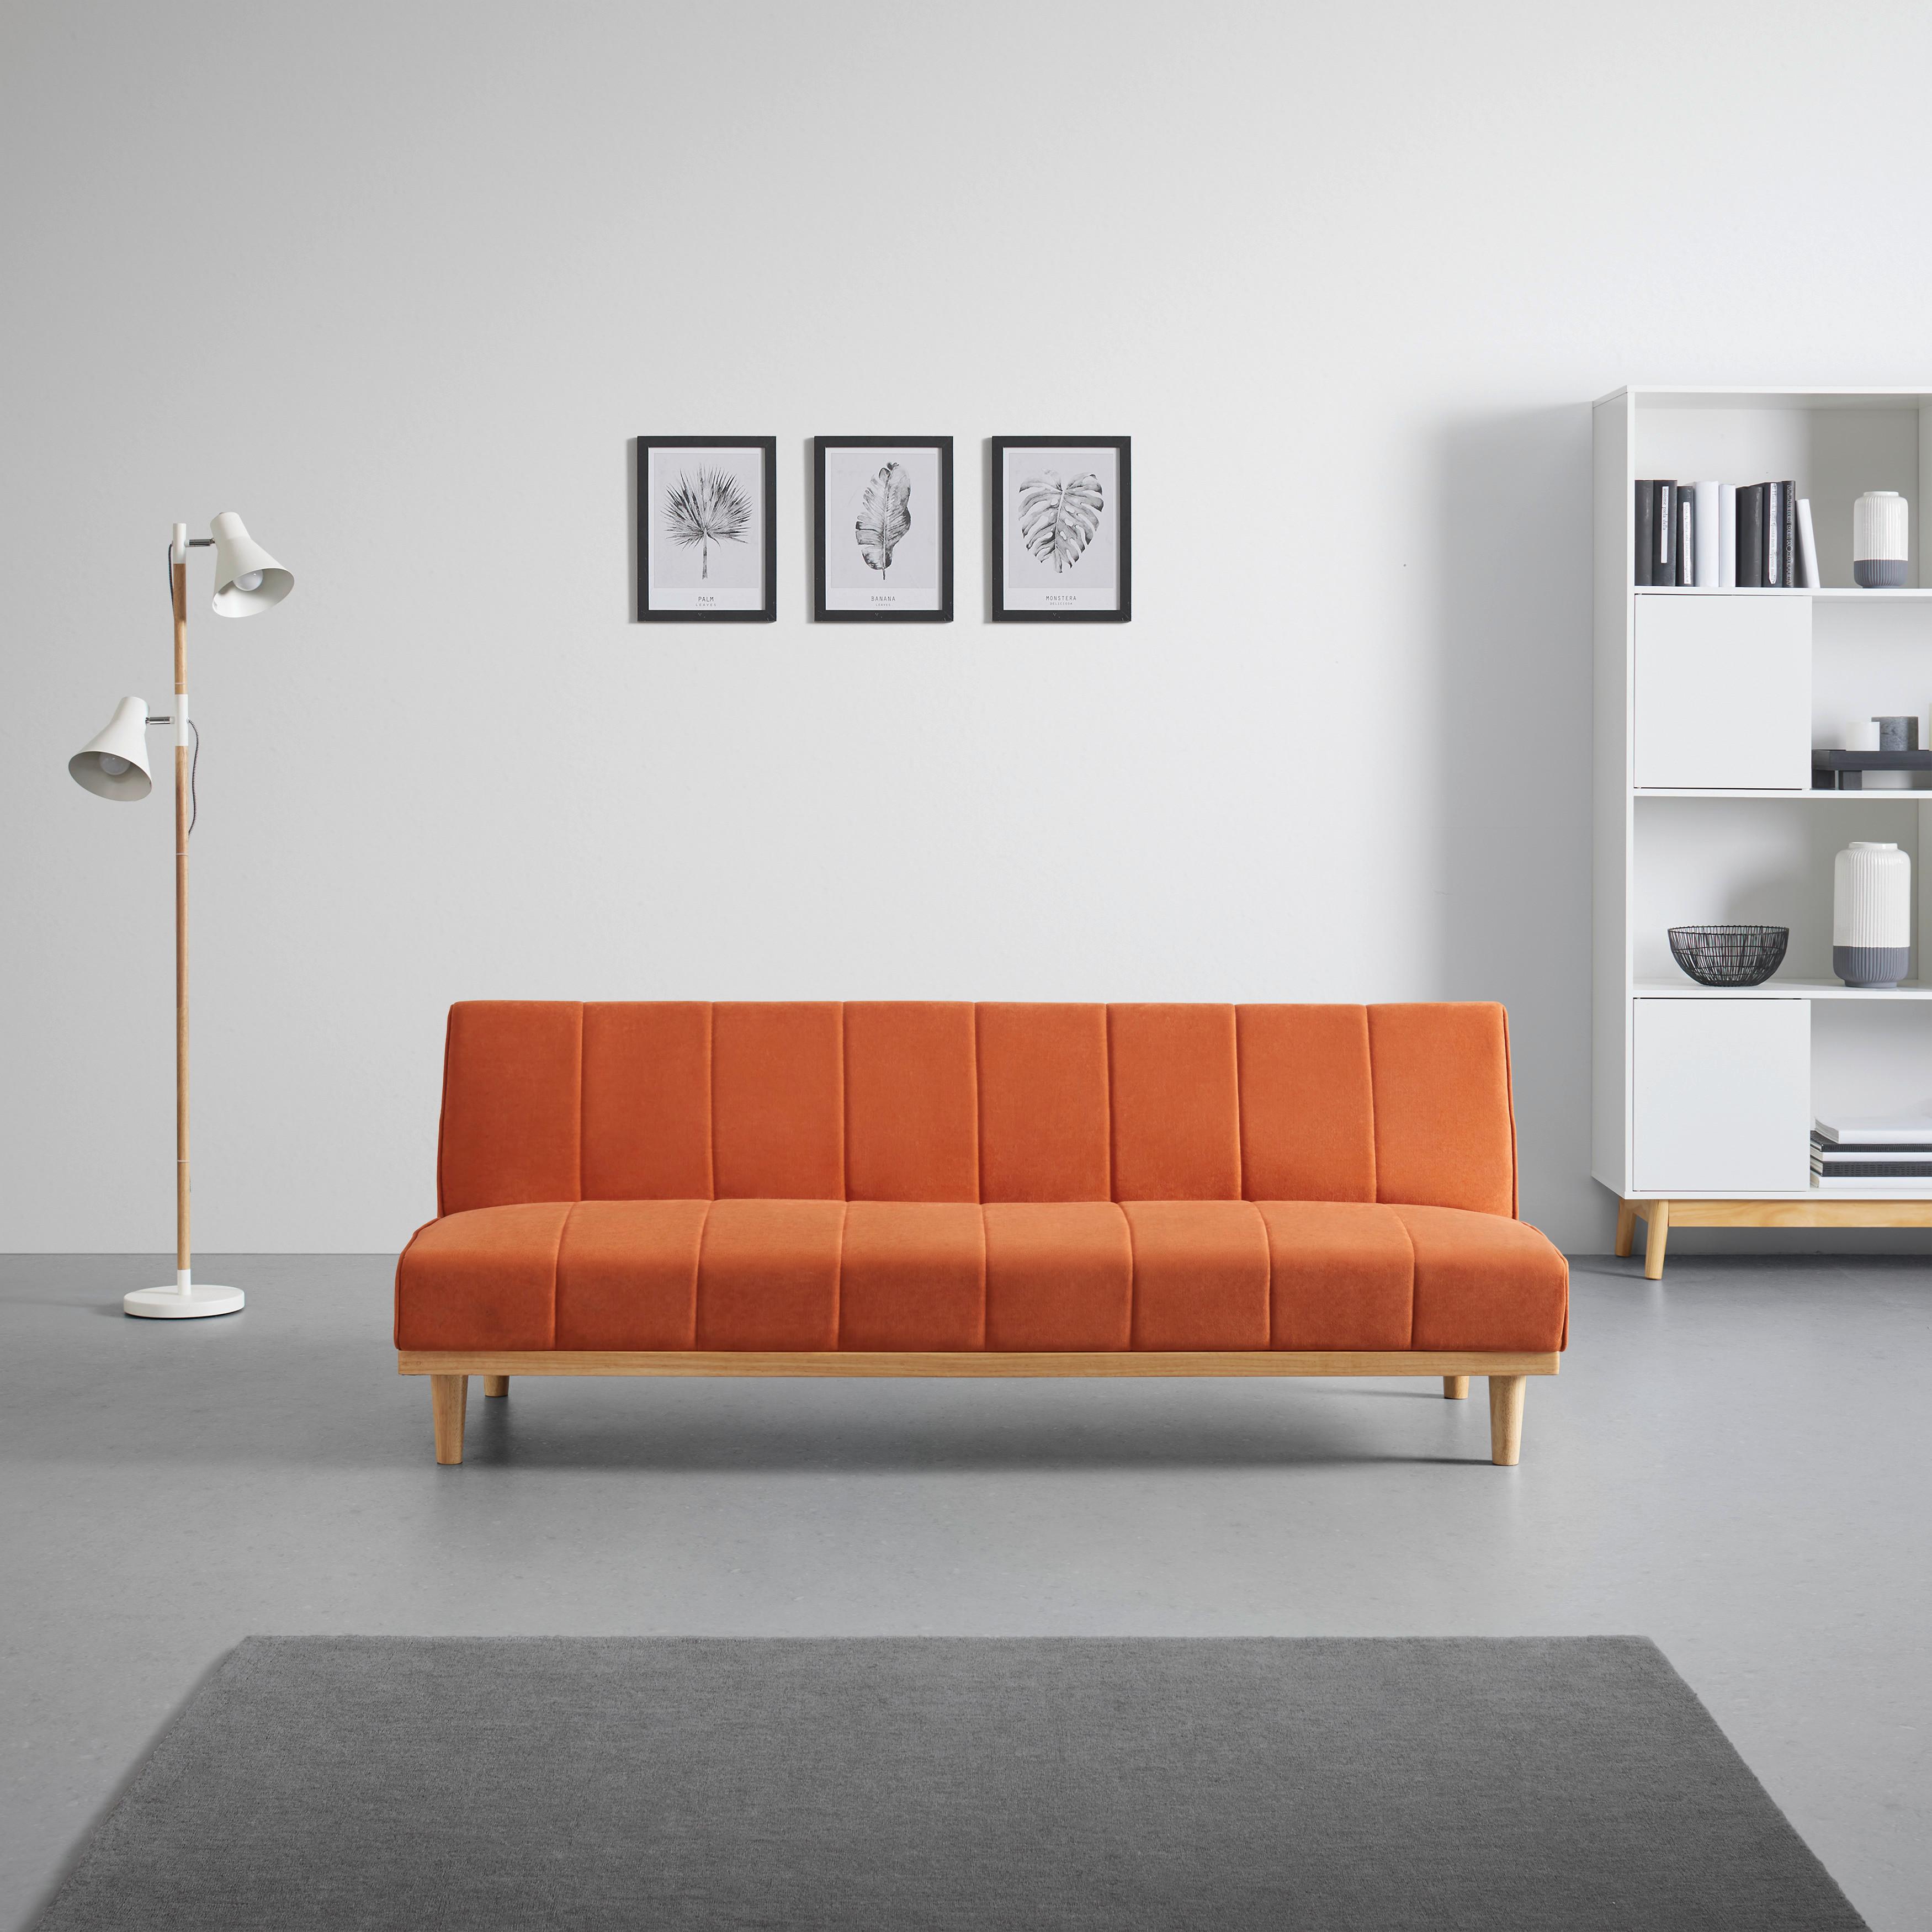 Zofa Sandy, Z Ležiščem - naravne barve/oranžna, Moderno, tekstil/les (179/68/74cm) - Bessagi Home